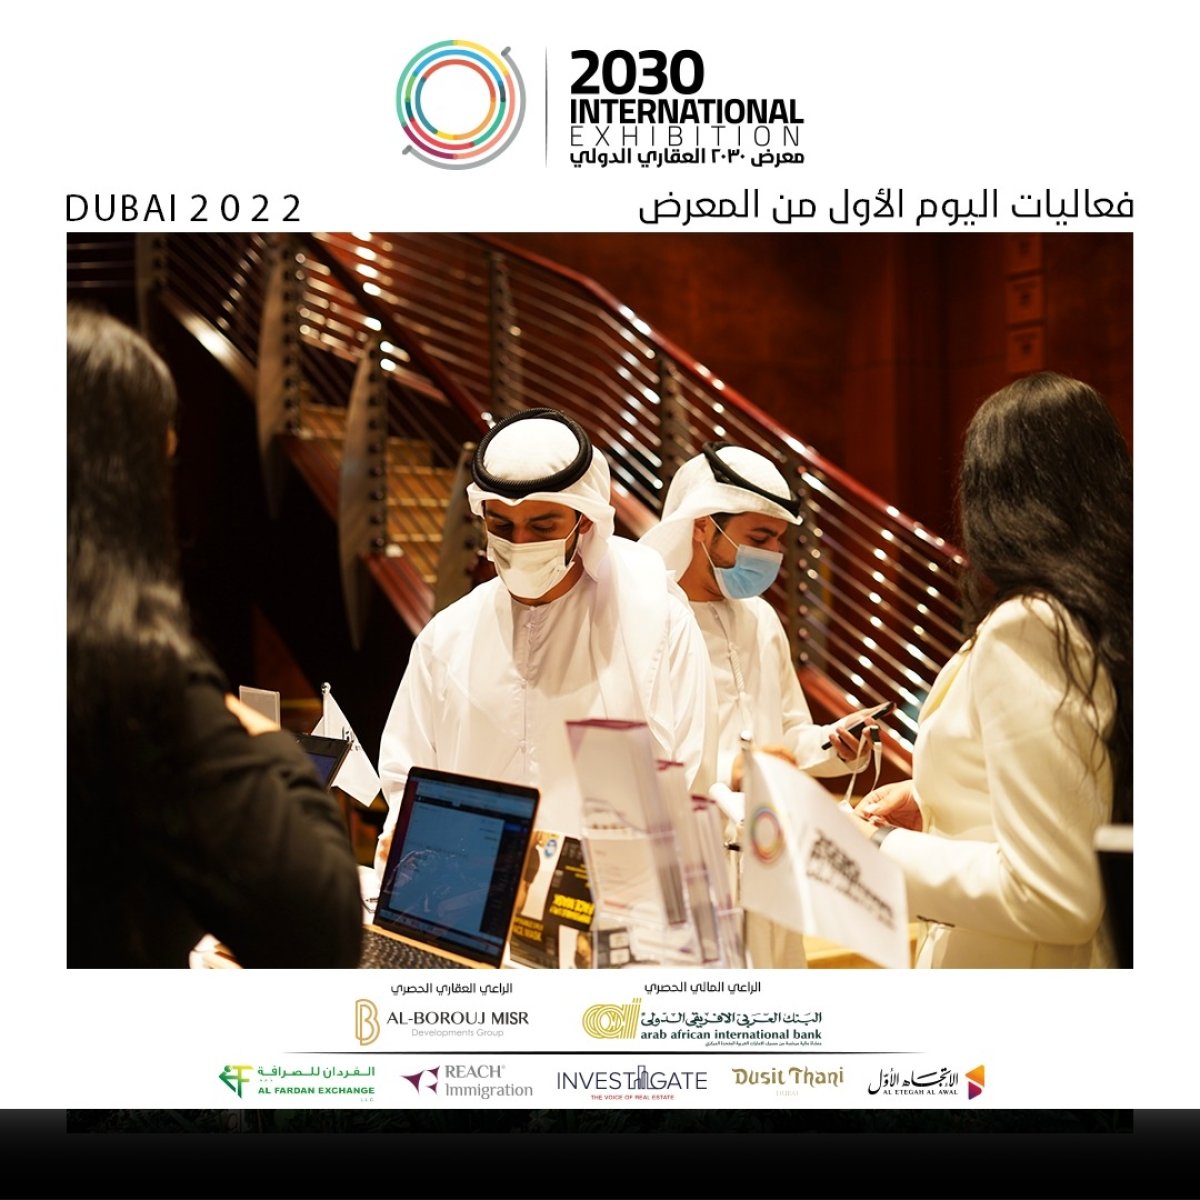 انطلاق فعاليات معرض "2030" الدولى  فى دبى بمشاركة  20  مطورا عقاريا وإقبالا جماهيريا كبيرا